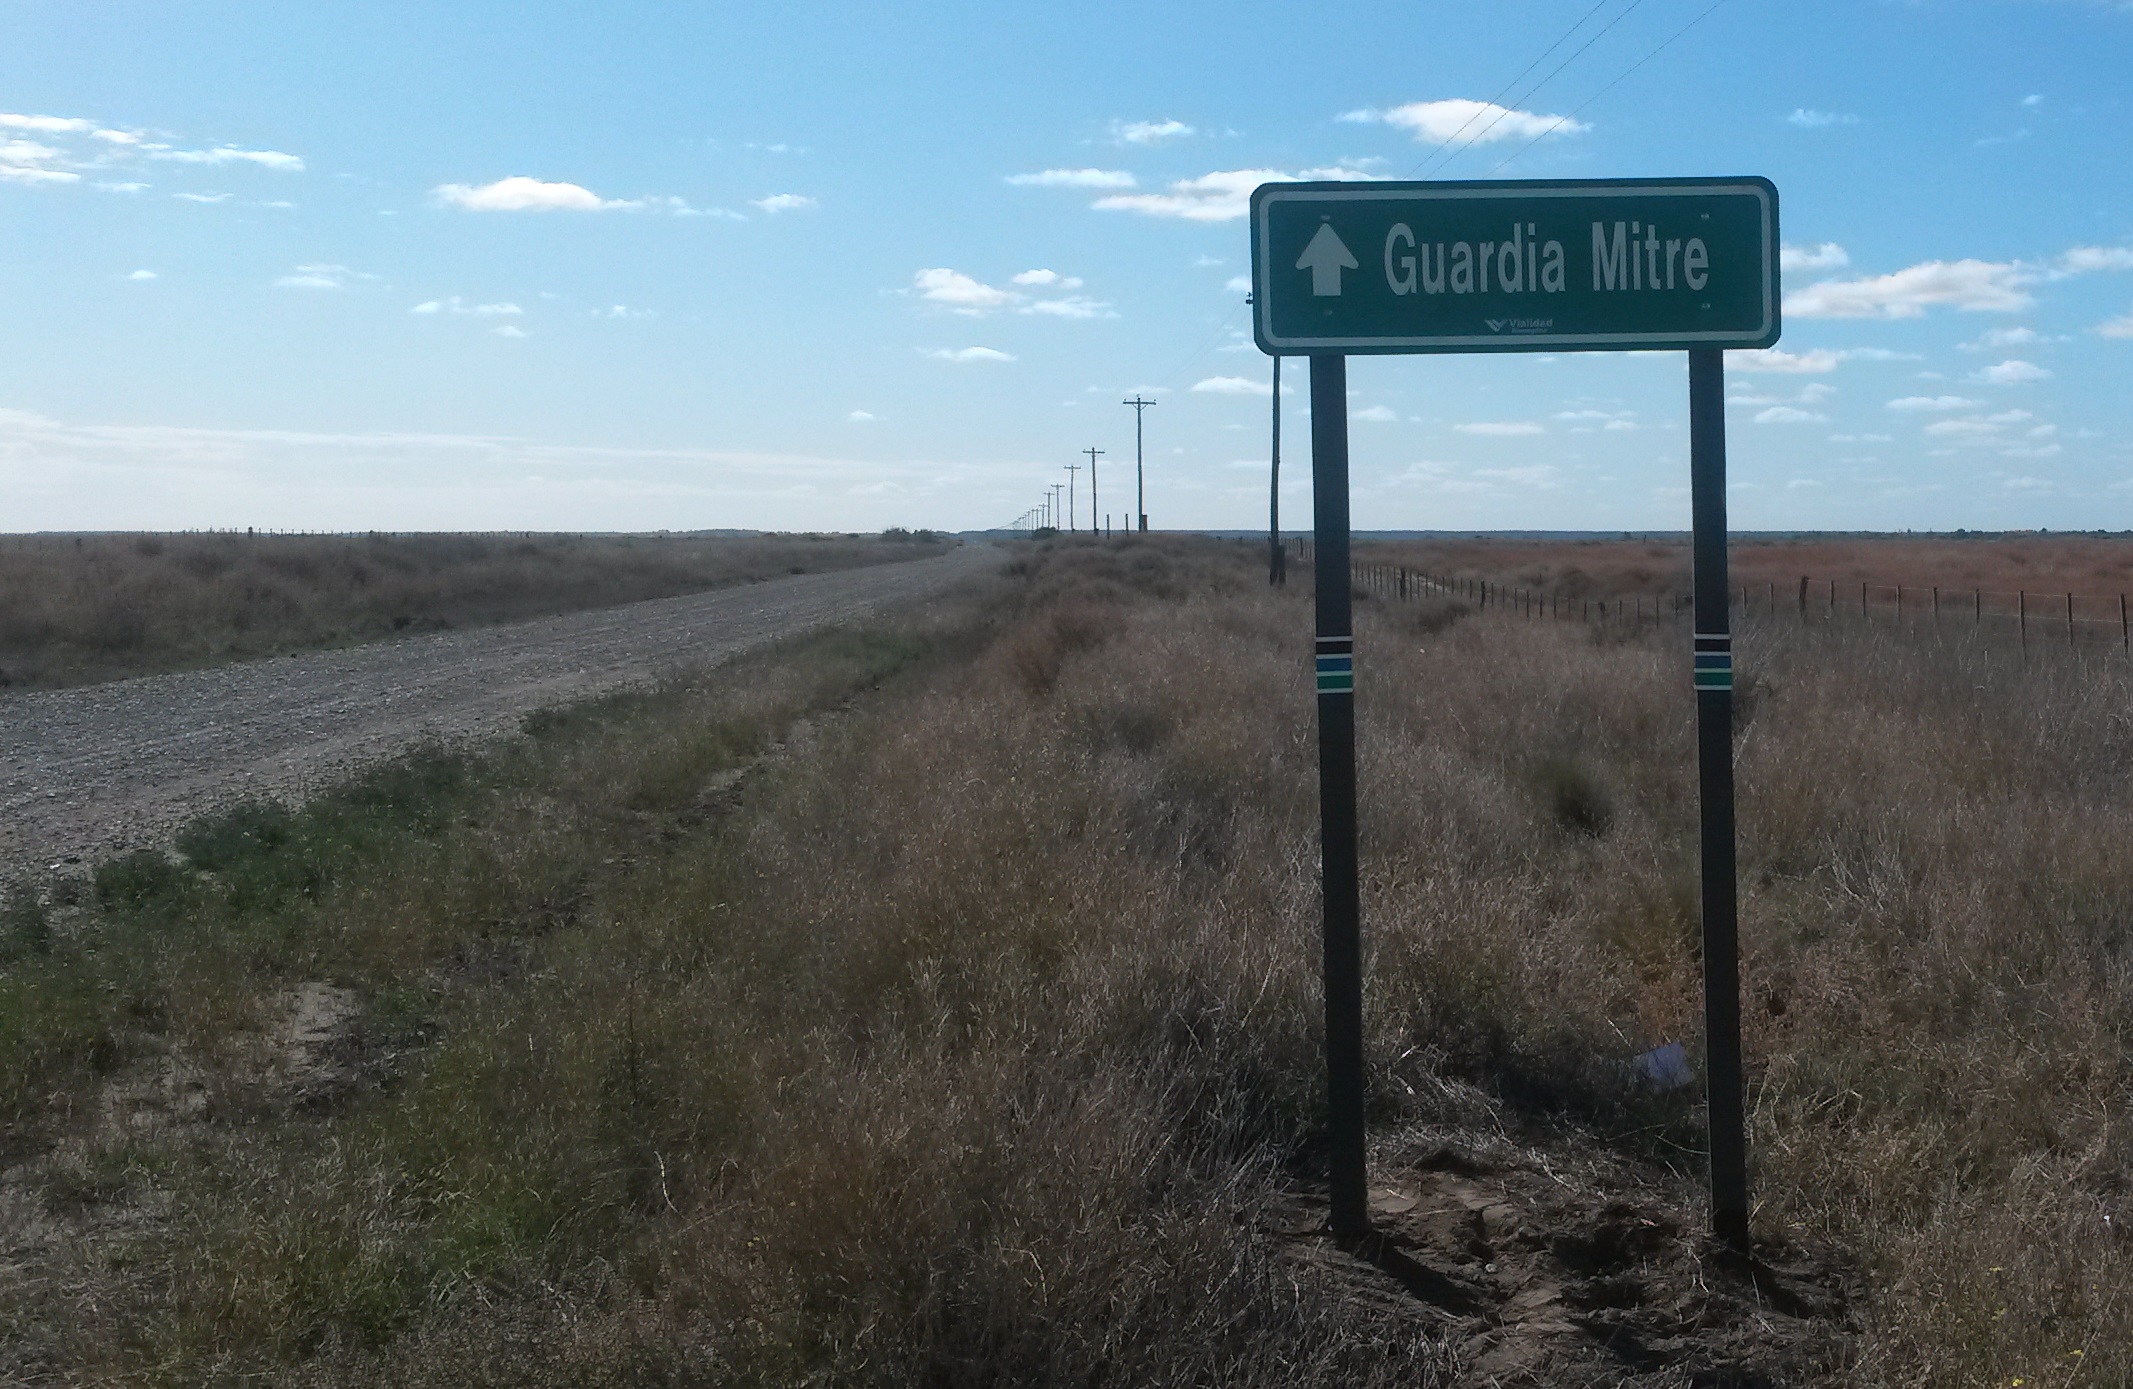 El hombre salió desde Guardia Mitre y se dirigía hacia Carmen de Patagones. Foto Archivo.